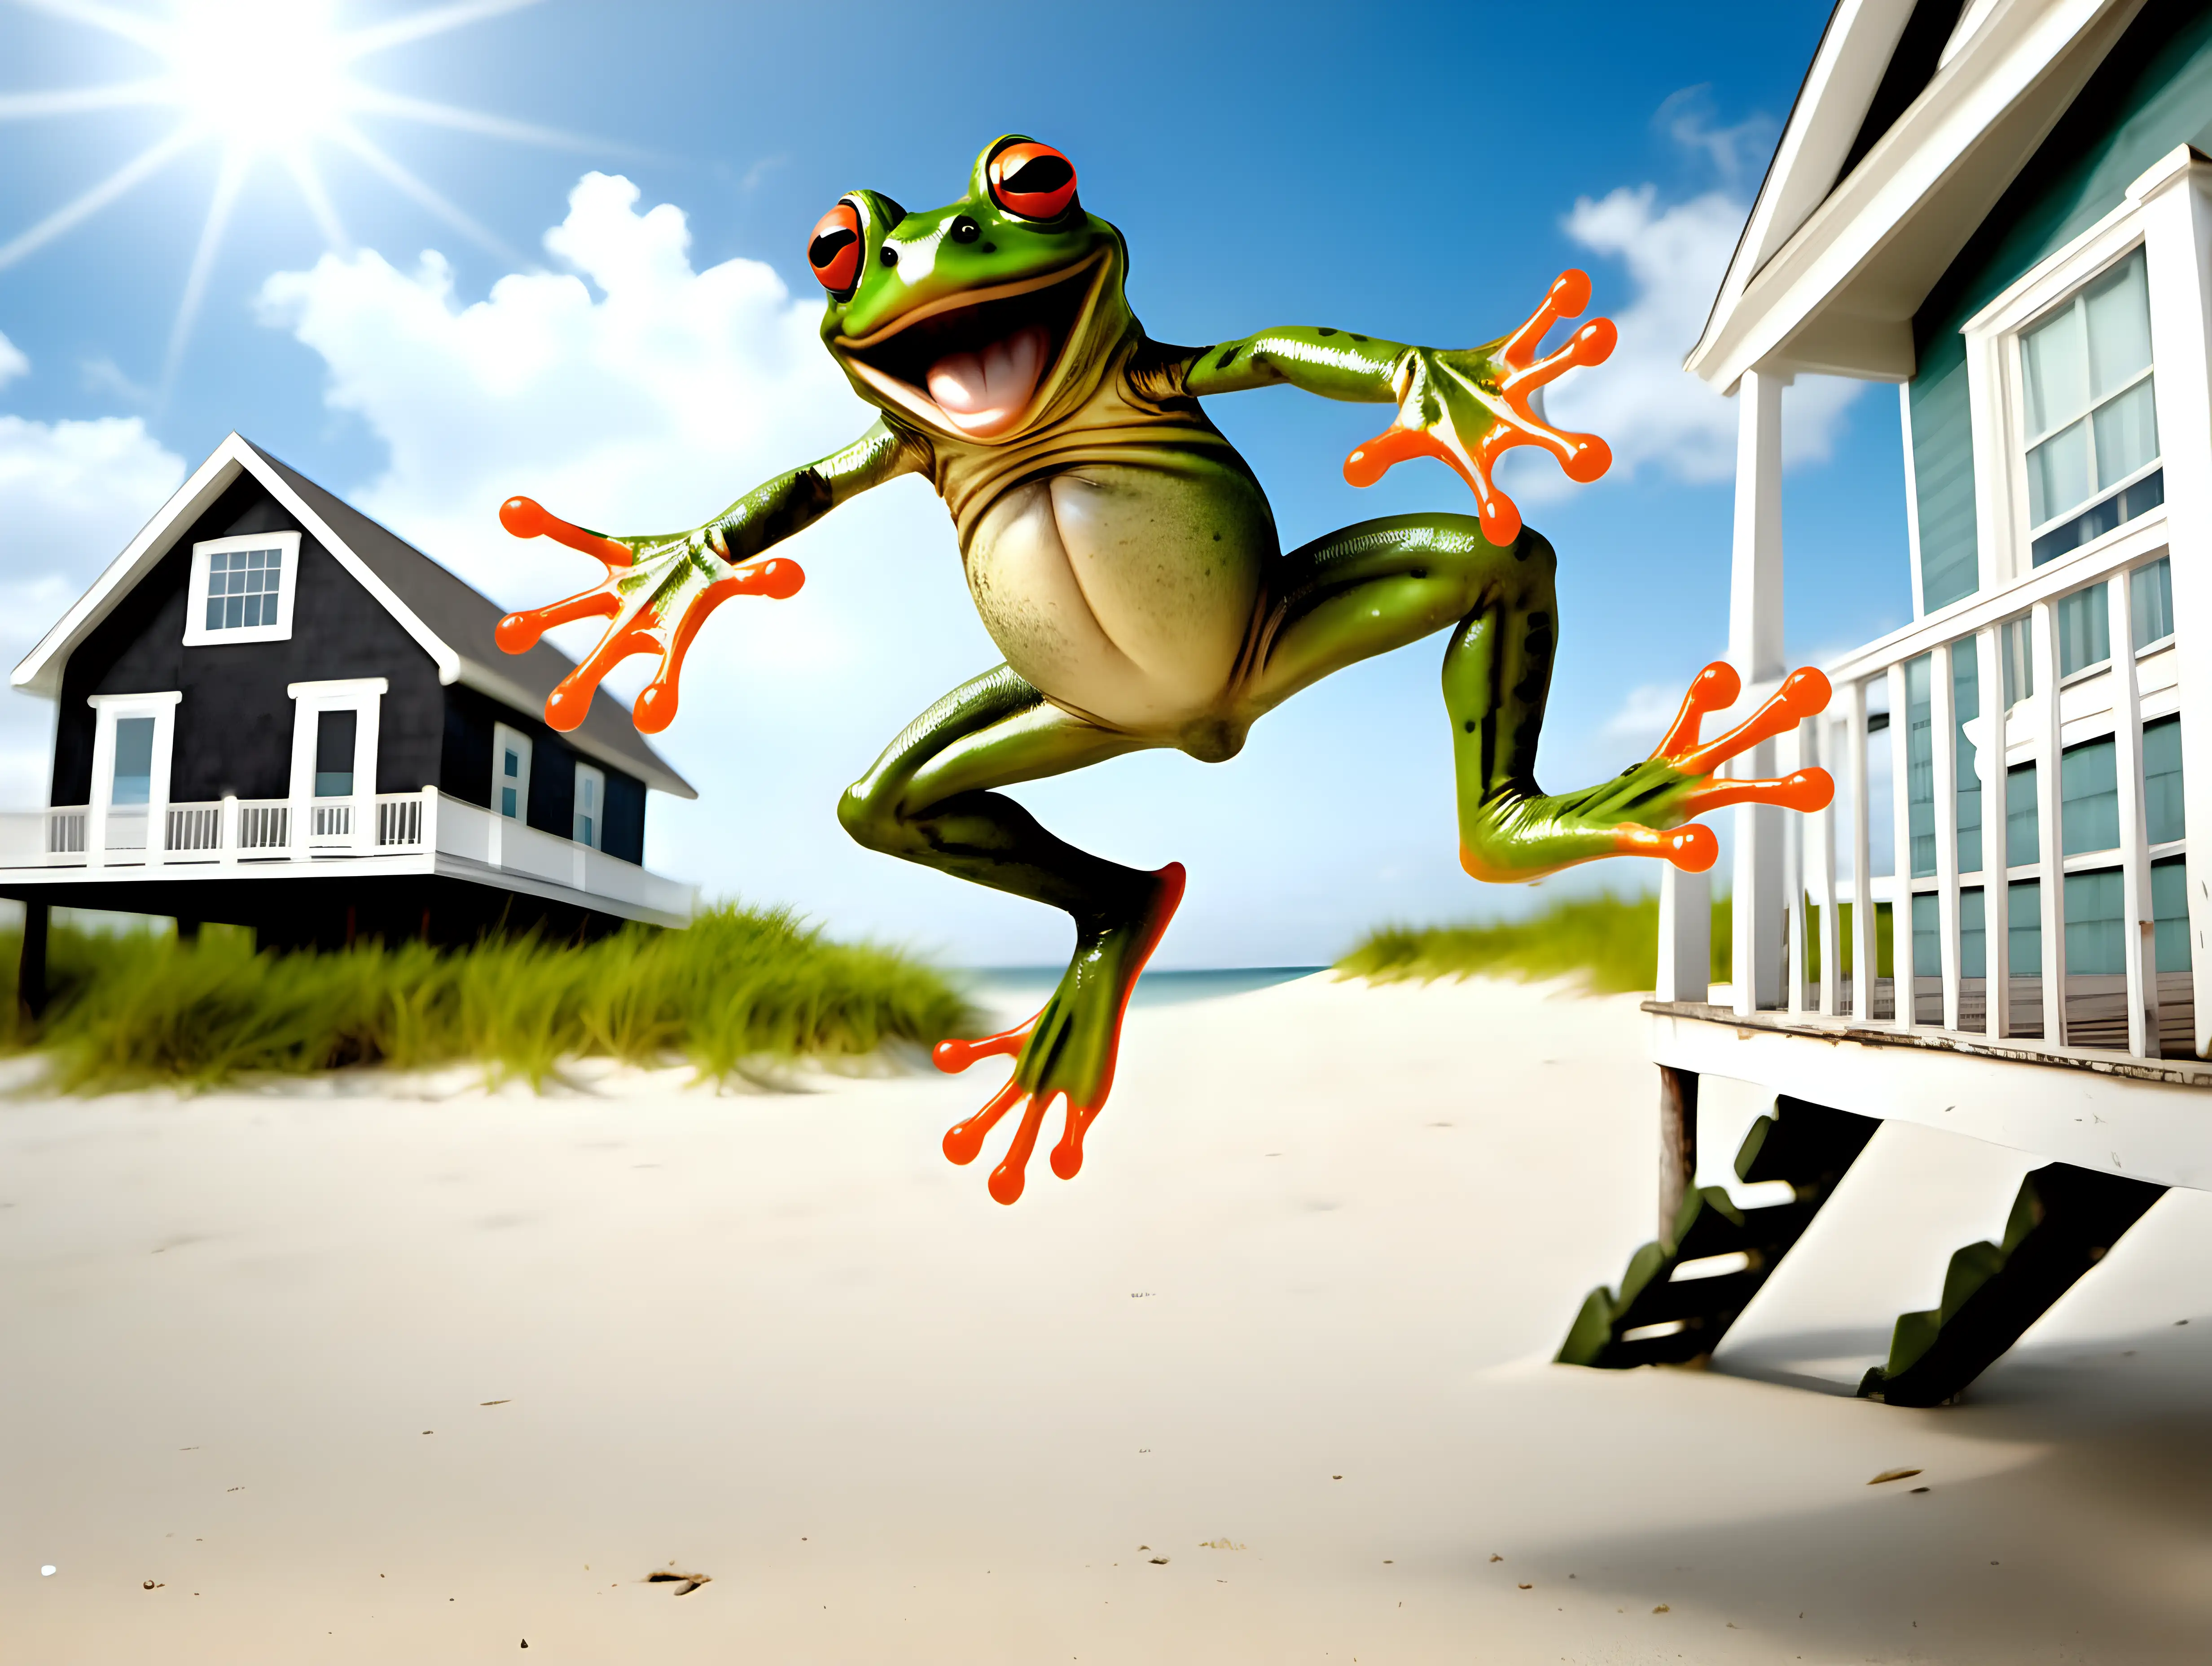 Joyful Frog Leaping Over a Beach House